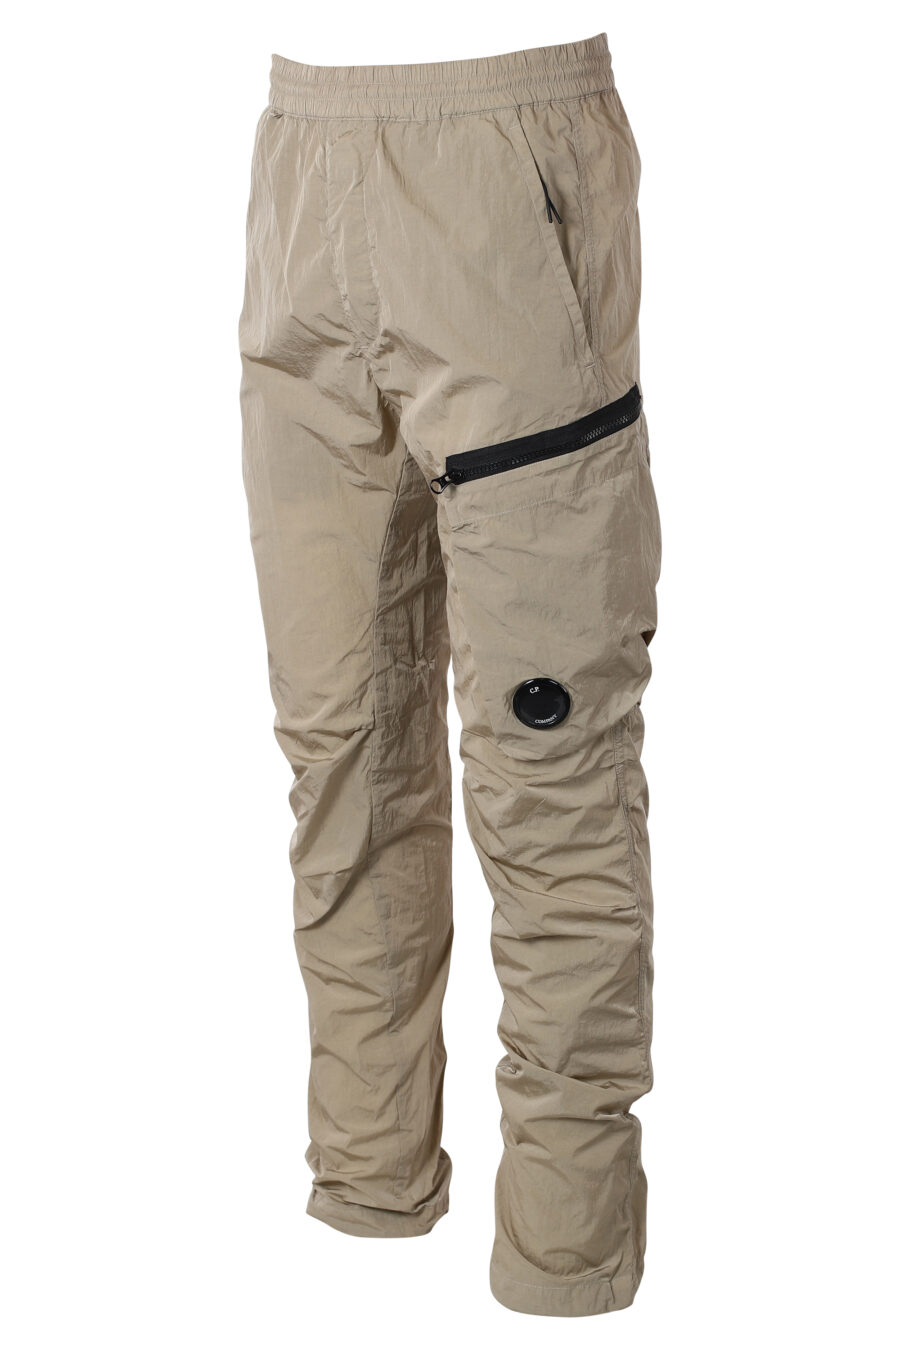 Pantalon beige avec poche latérale diagonale et mini-logo circulaire - IMG 9939